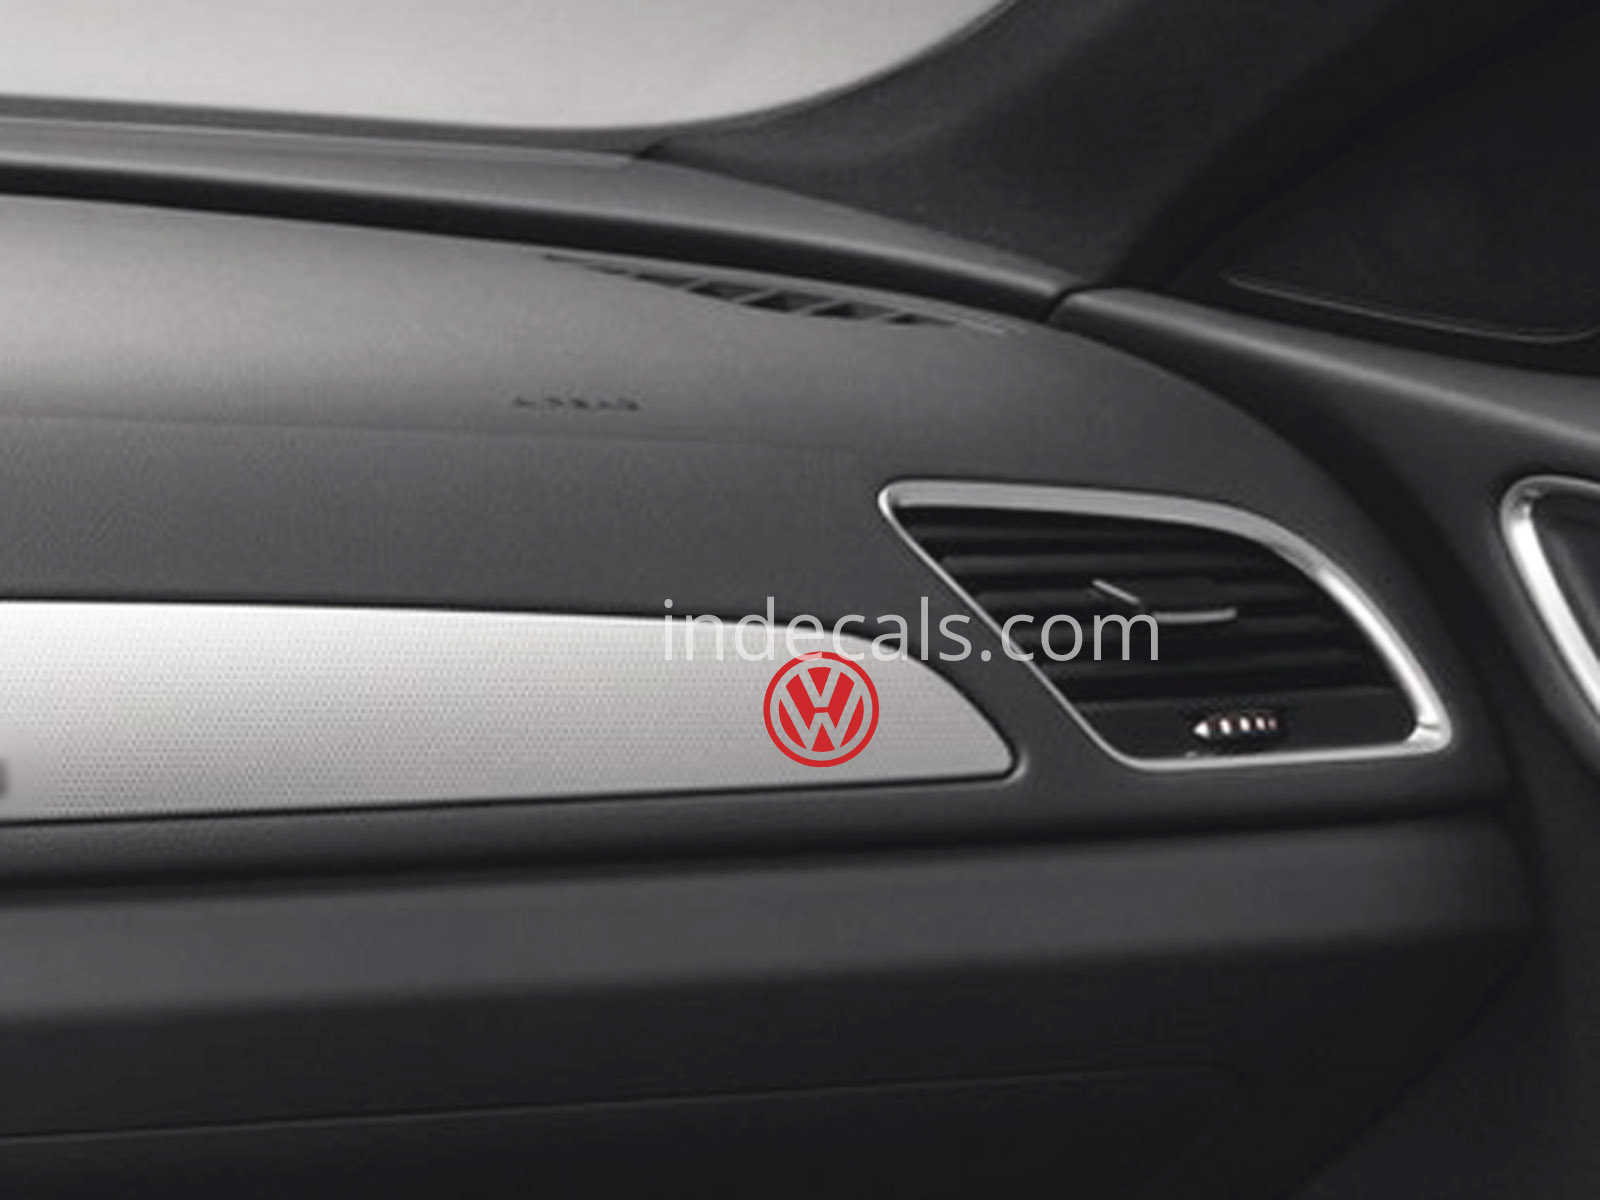 3 x Volkswagen Stickers for Dash Trim - Red